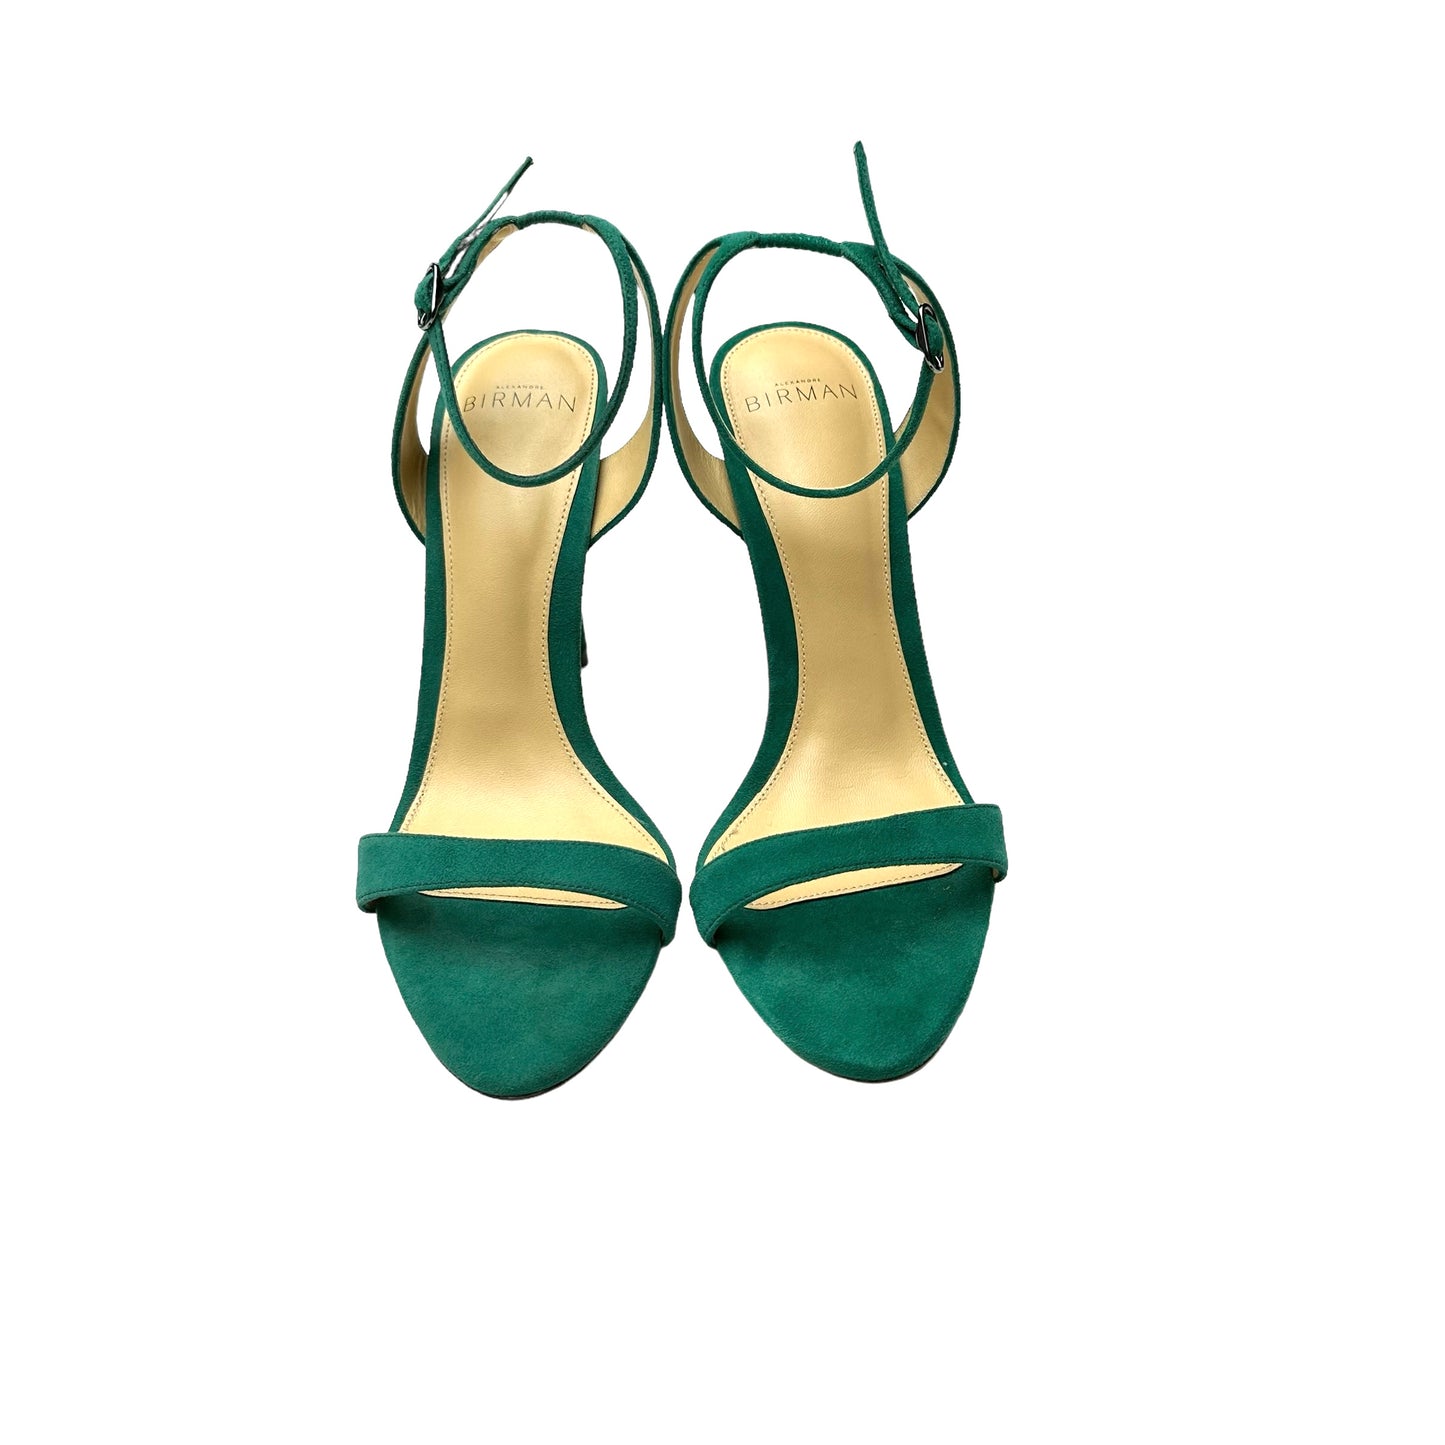 Green Suede Heels - 7